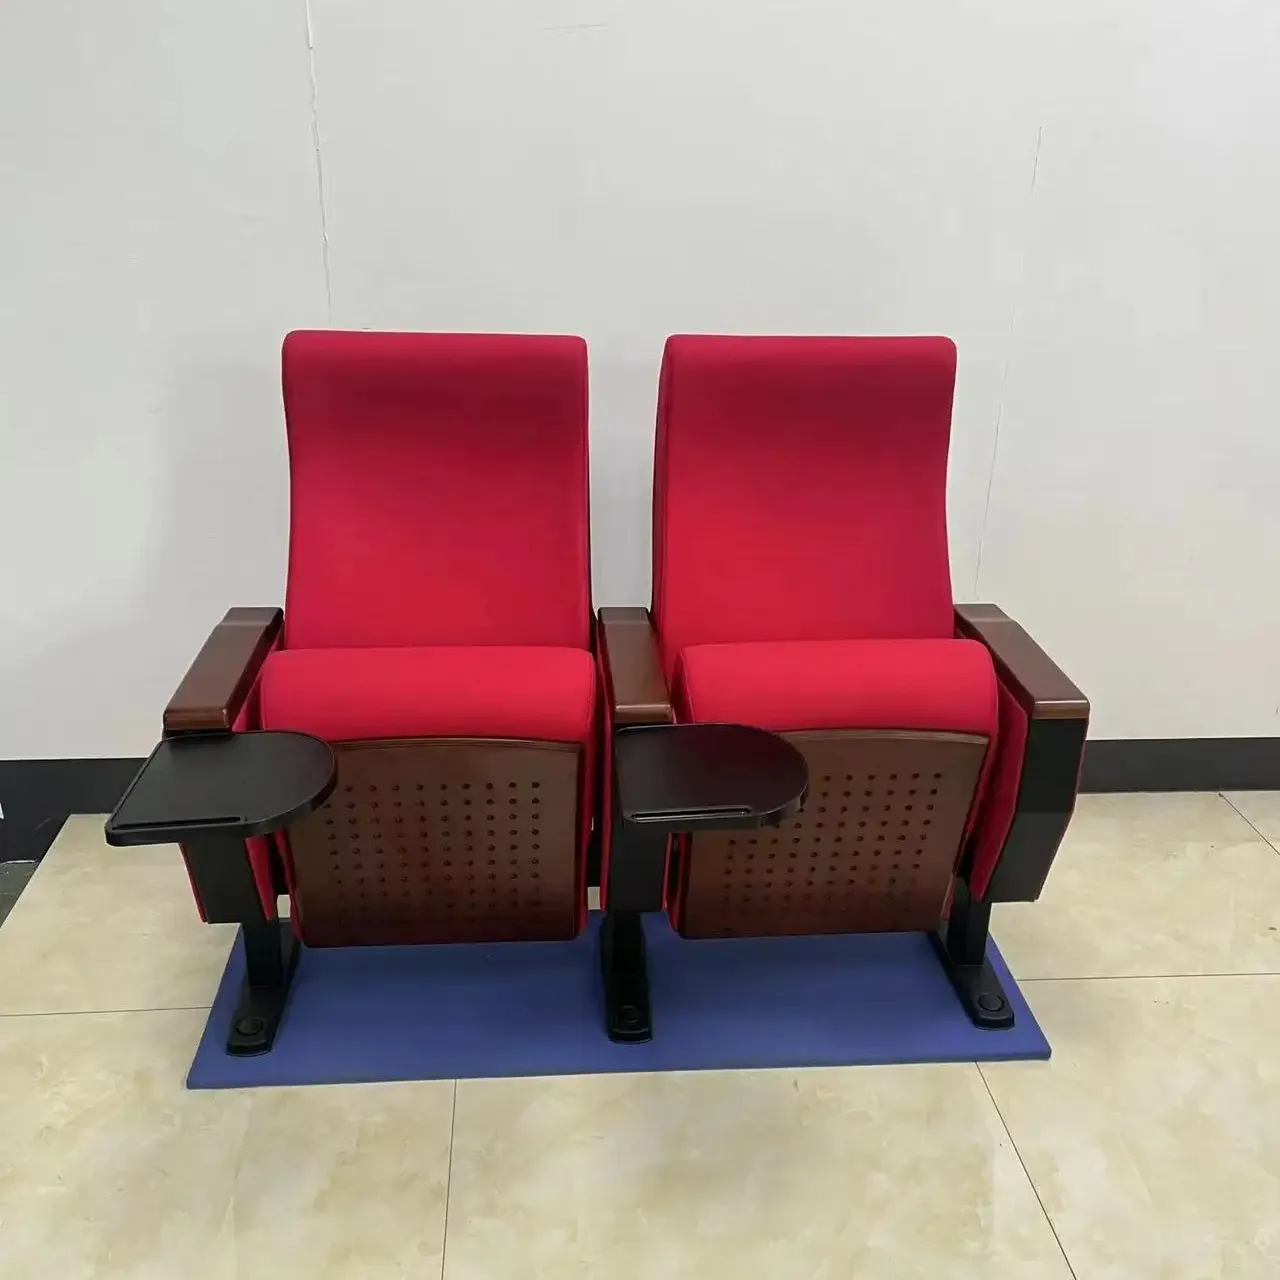 Alüminyum alaşımlı mahkeme salonu izleyici koltukları konferans odası sandalyeleri multimedya konferans salonu oditoryum koltukları